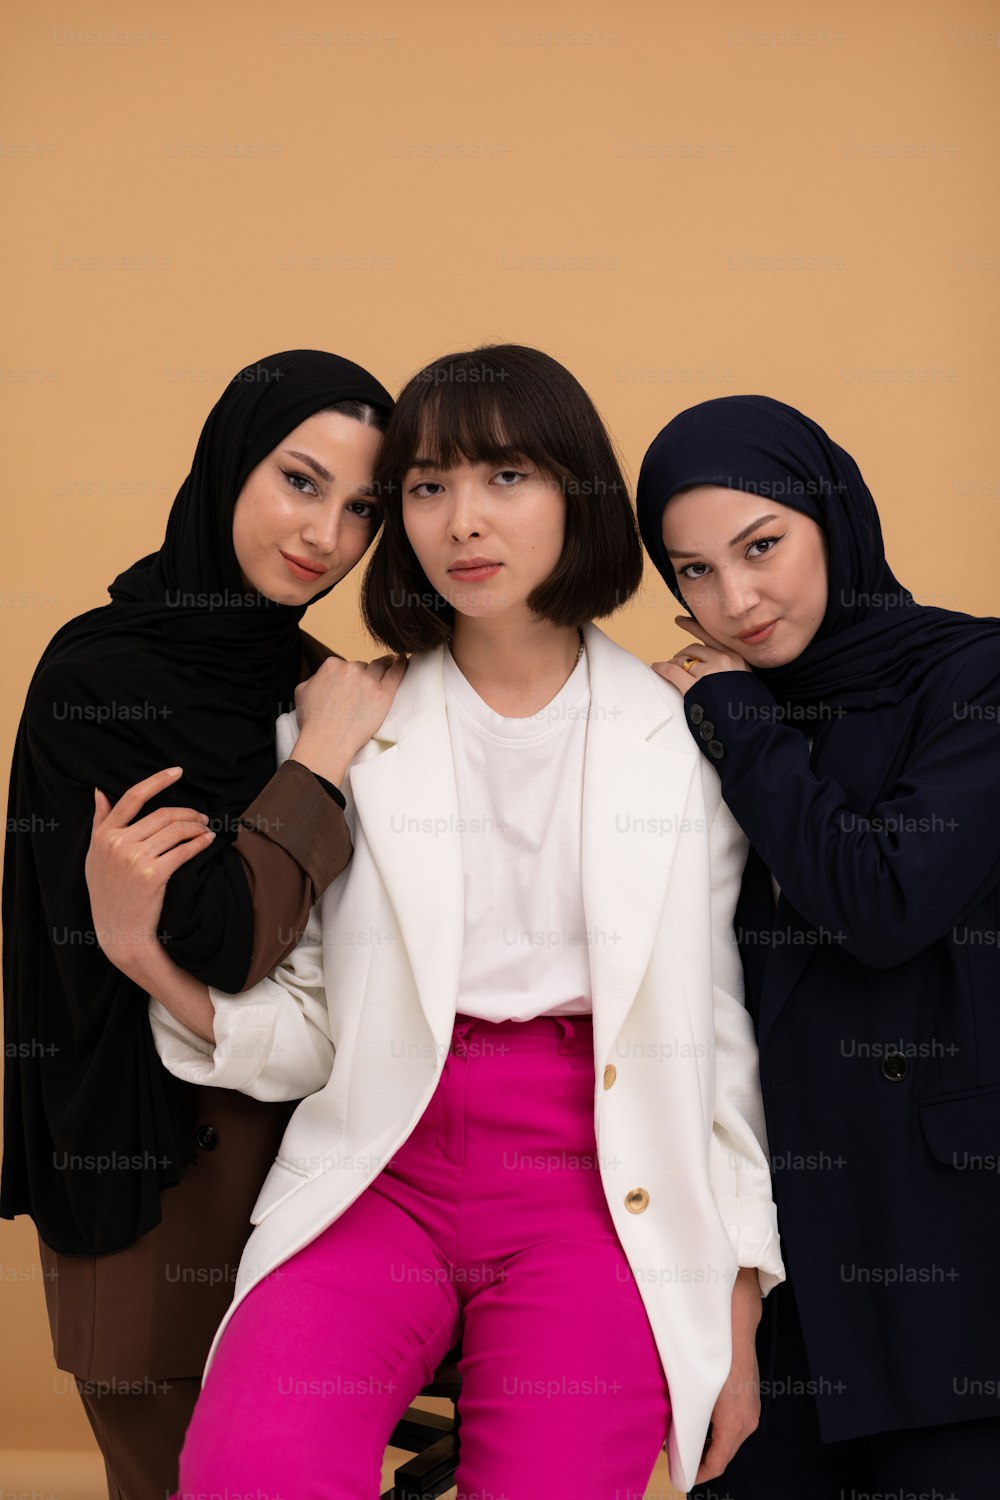 Tres mujeres posan juntas para una foto